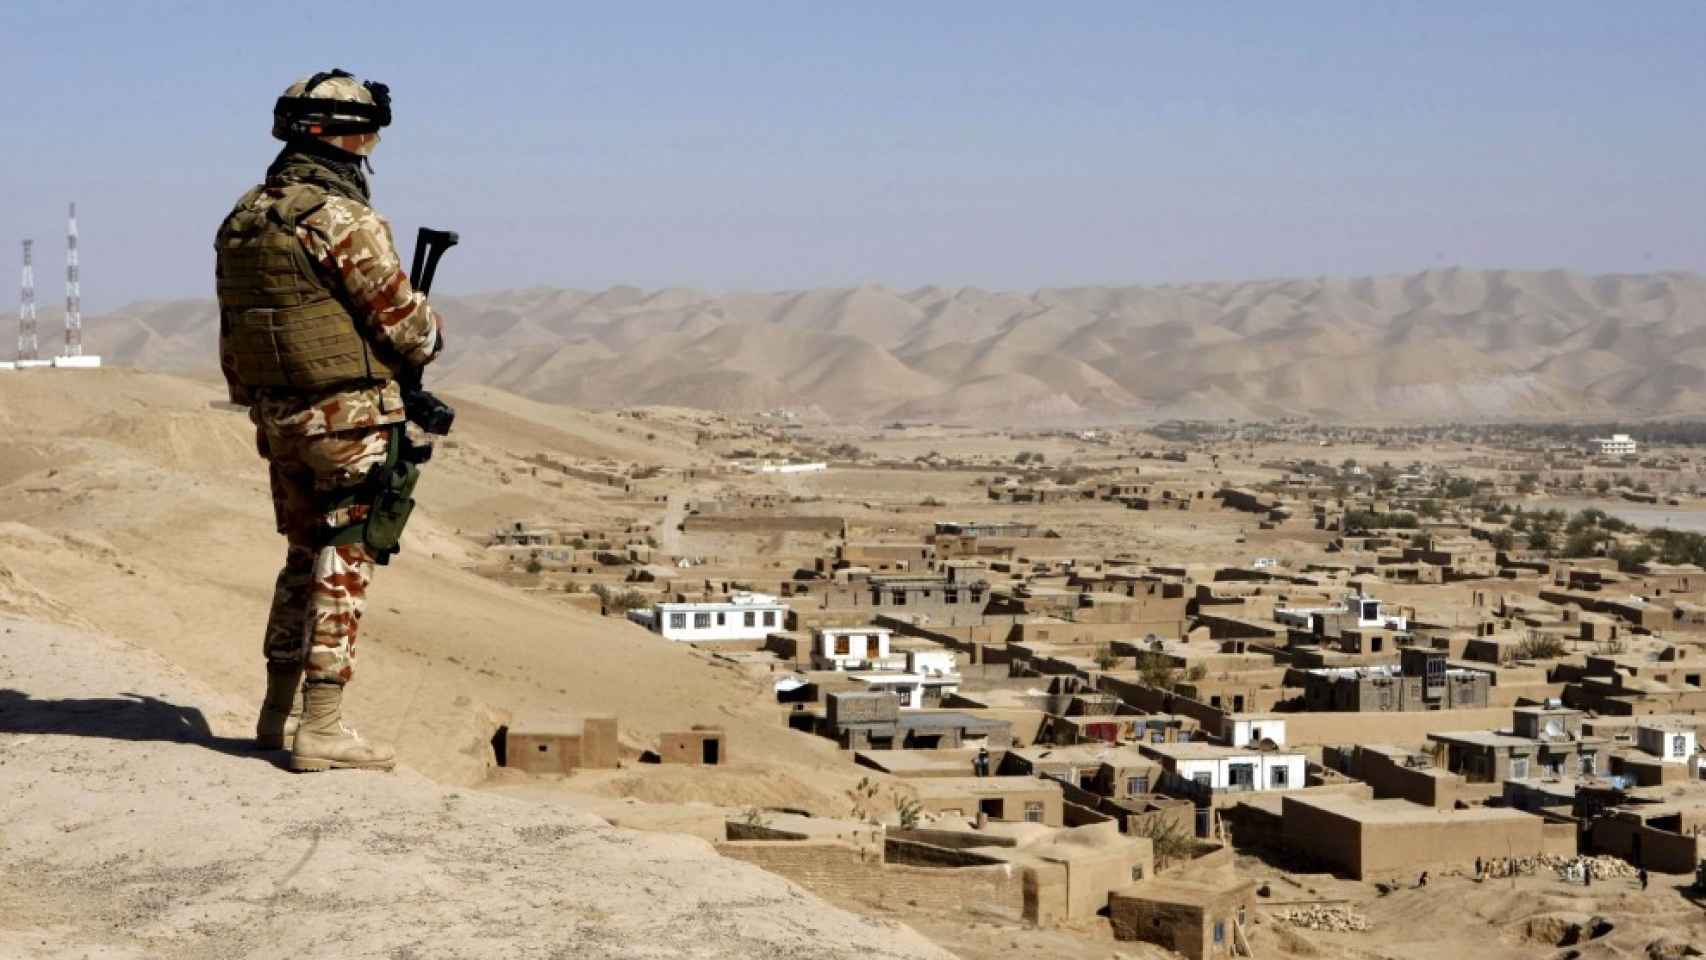 Un soldado español hace guardia cerca de la base de Qala i Naw, en Afganistán.